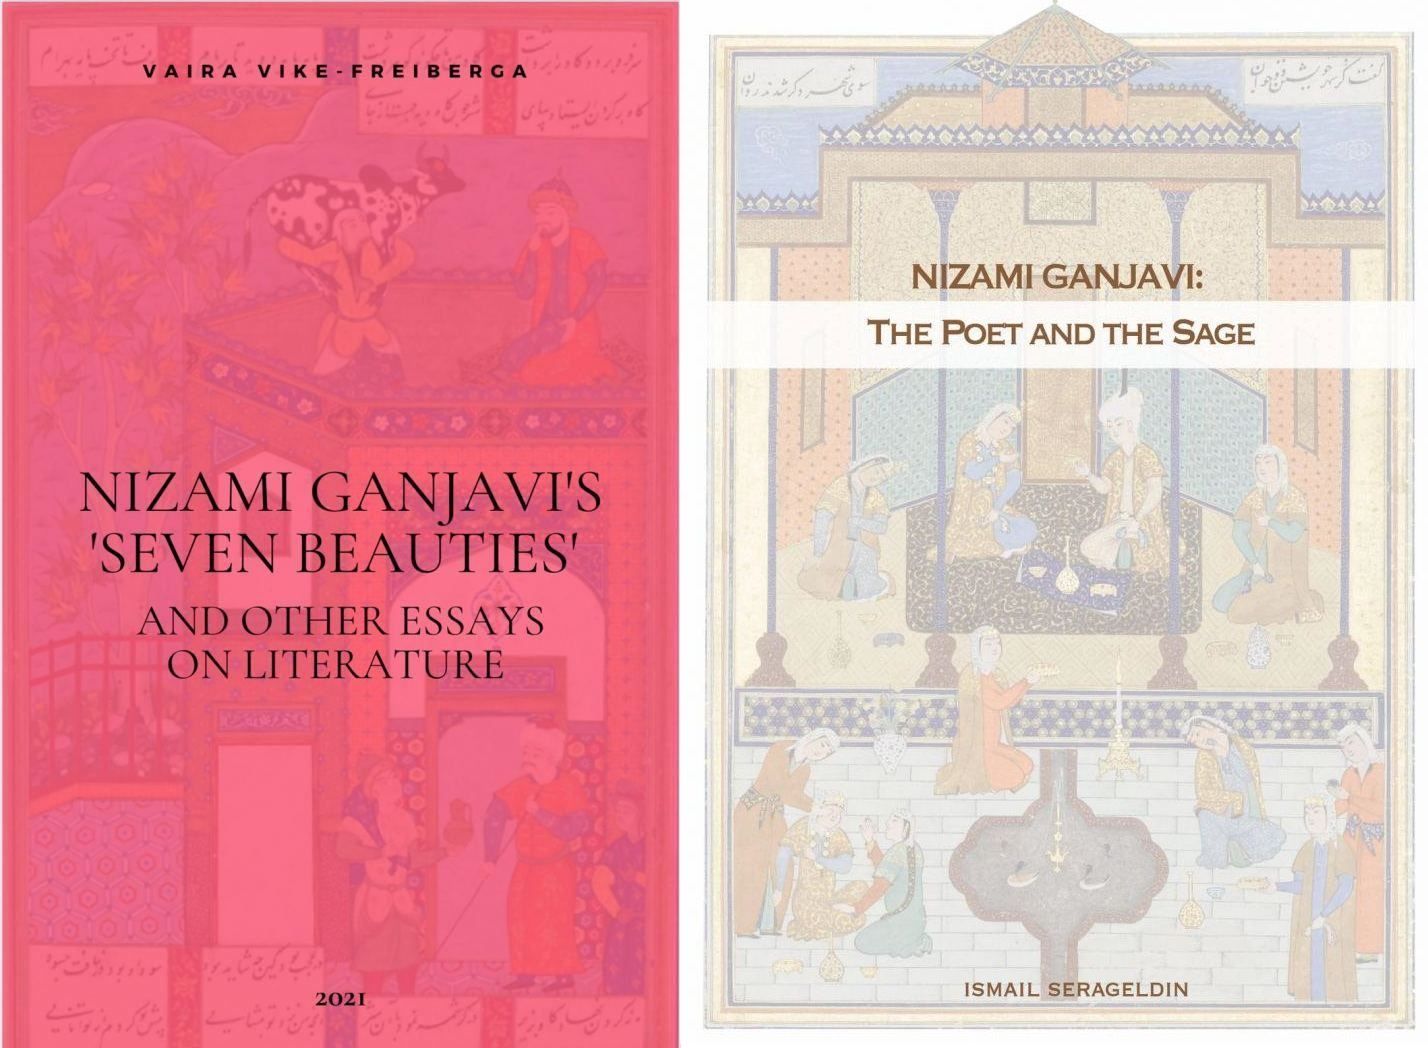 Im Rahmen des VIII Global Baku Forum wurden zwei Bücher über Nizami Ganjavi vorgestellt